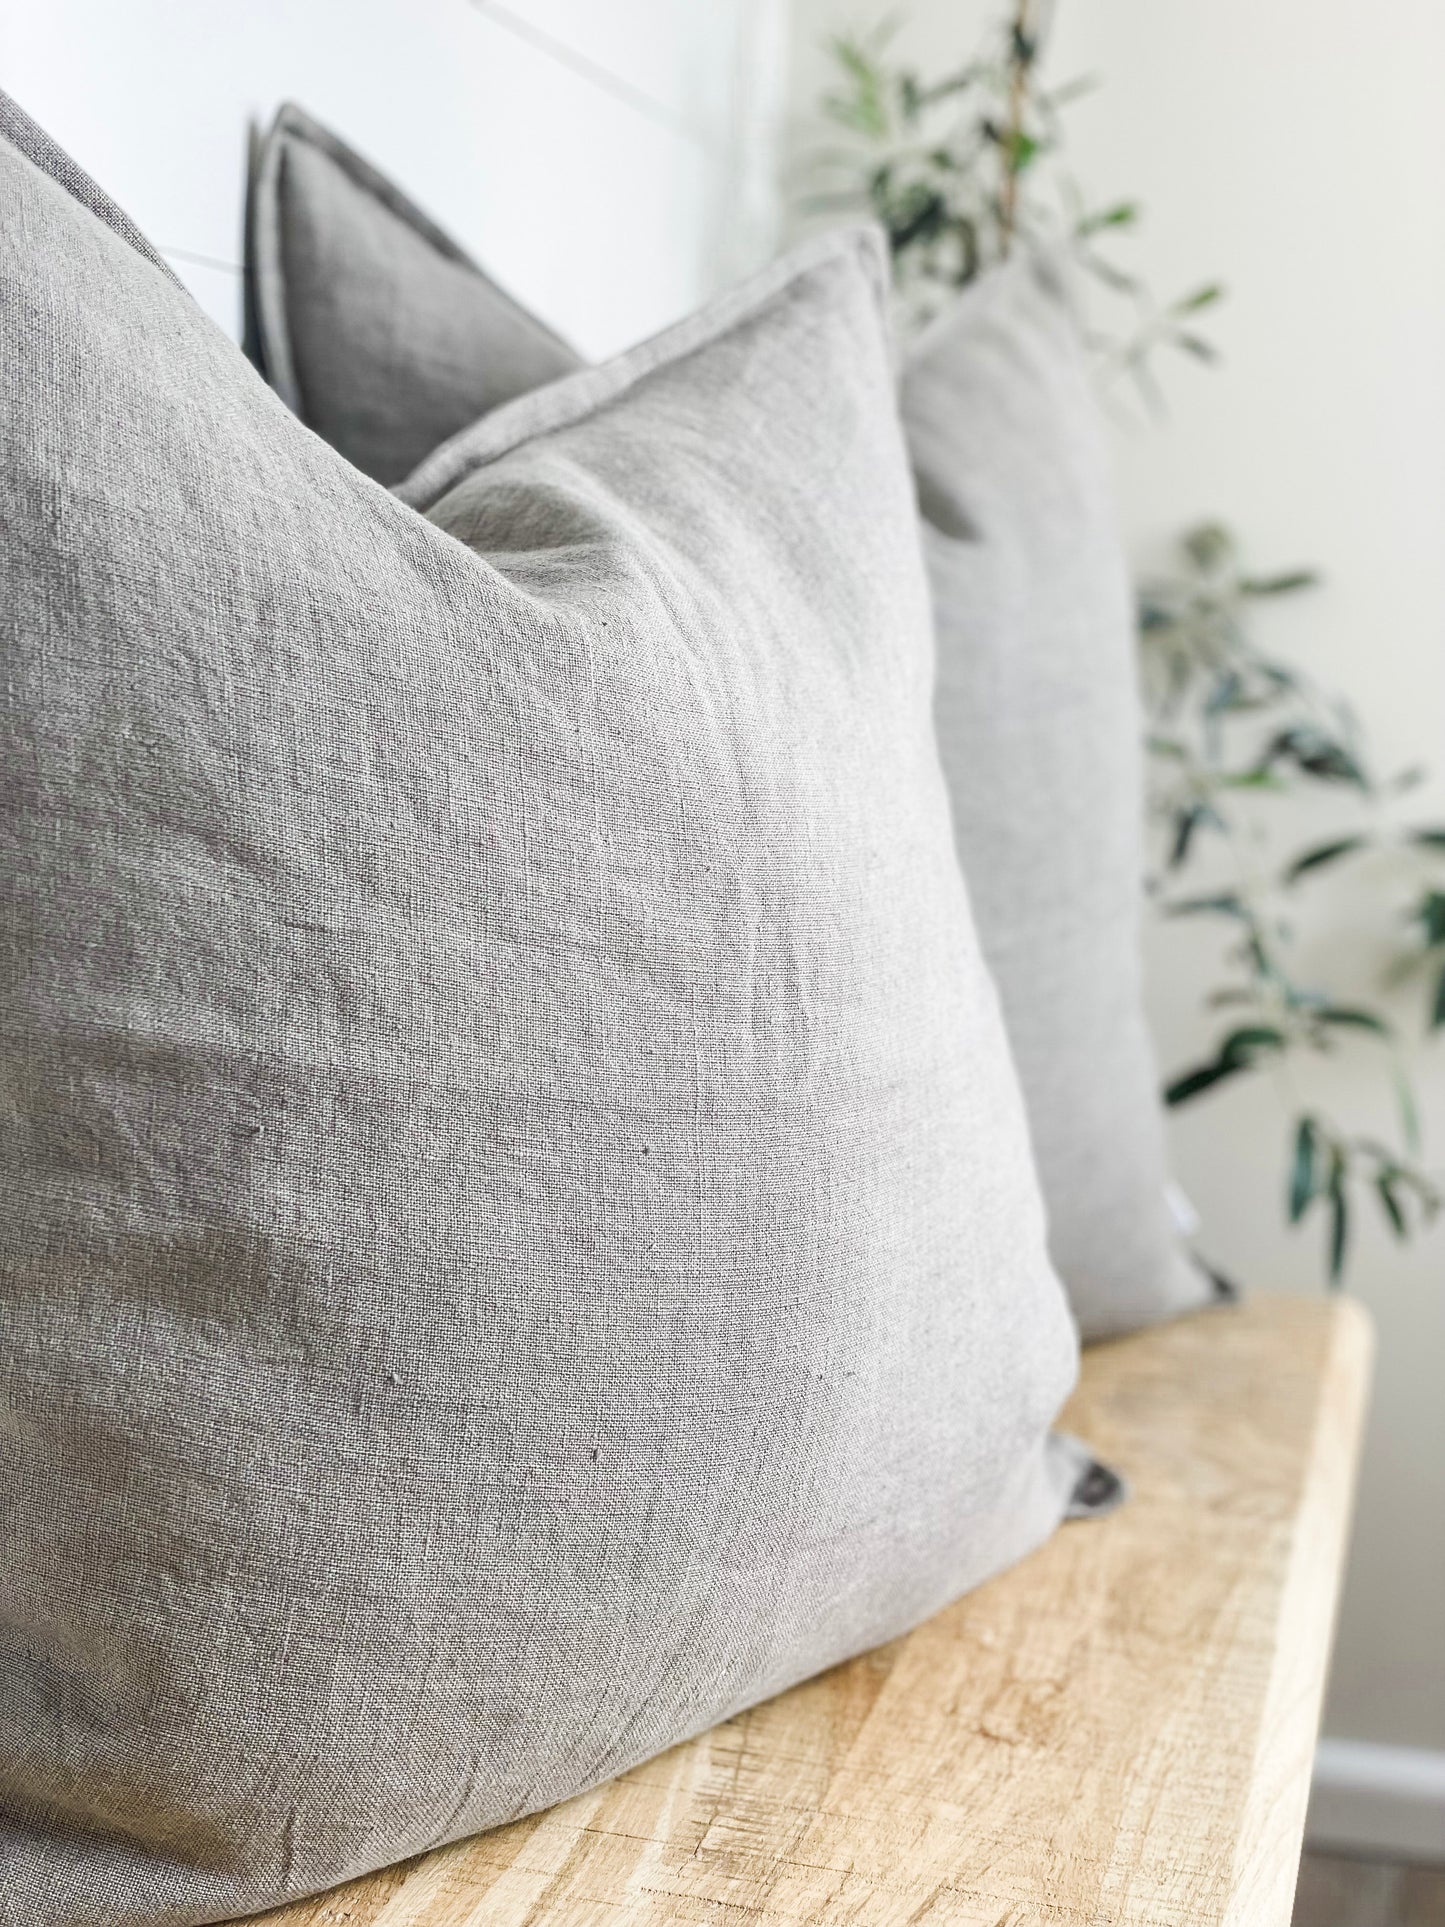 Cushion Cover - Stone European Linen